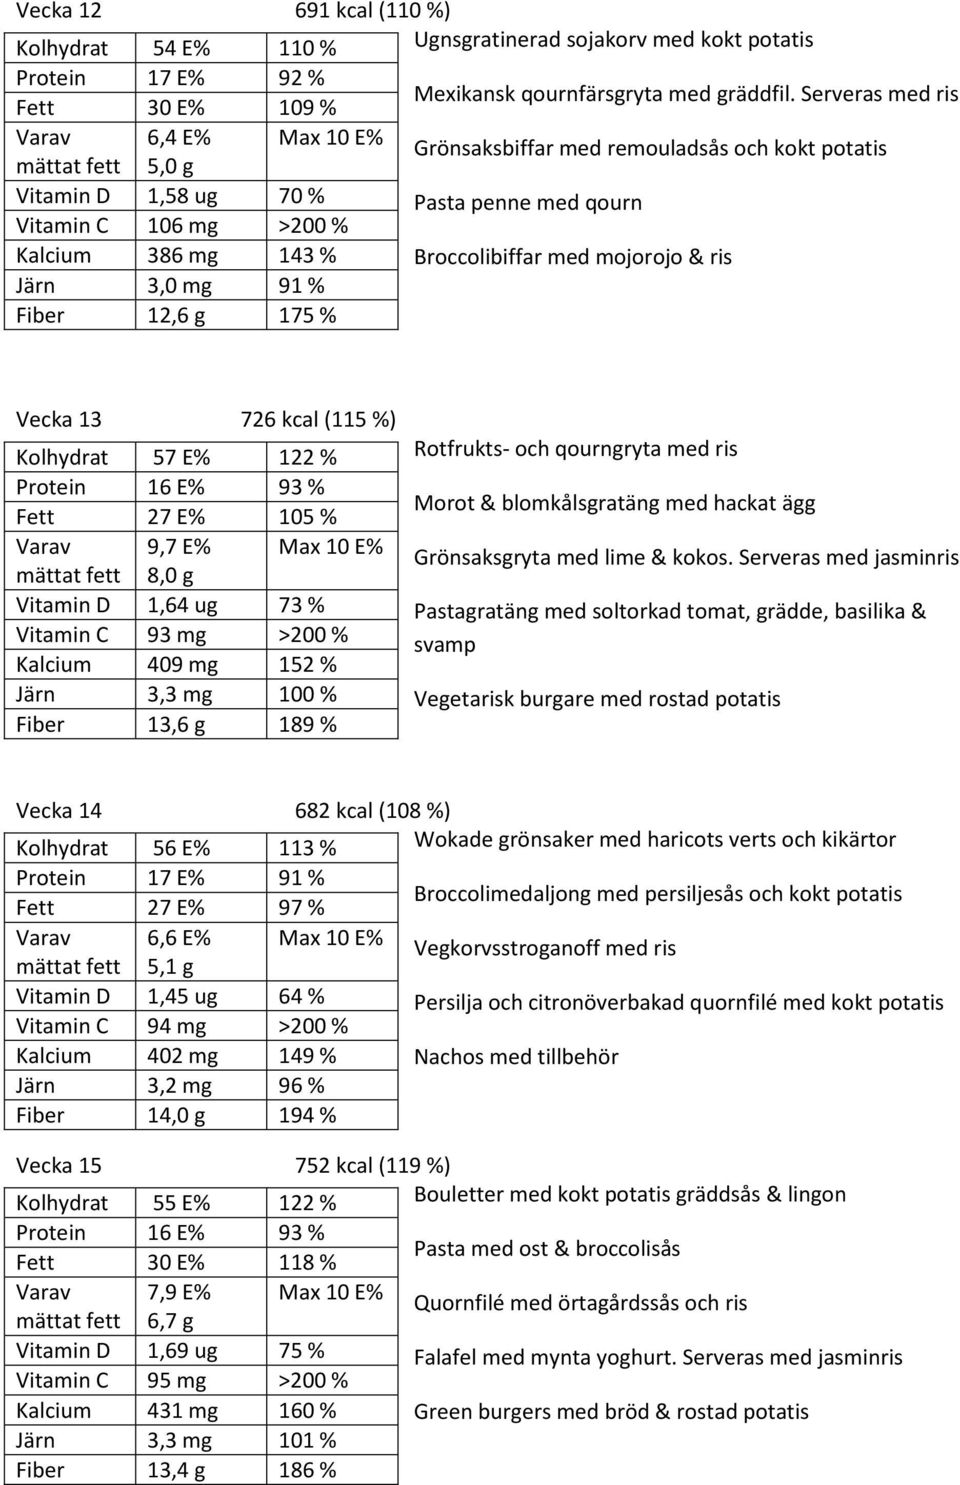 (115 %) Kolhydrat 57 E% 122 % 16 E% 93 % 27 E% 105 % 9,7 E% 8,0 g 1,64 ug 73 % 93 mg Kalcium 409 mg 152 % Järn 3,3 mg 100 % Fiber 13,6 g 189 % Rotfrukts- och qourngryta med ris Morot &